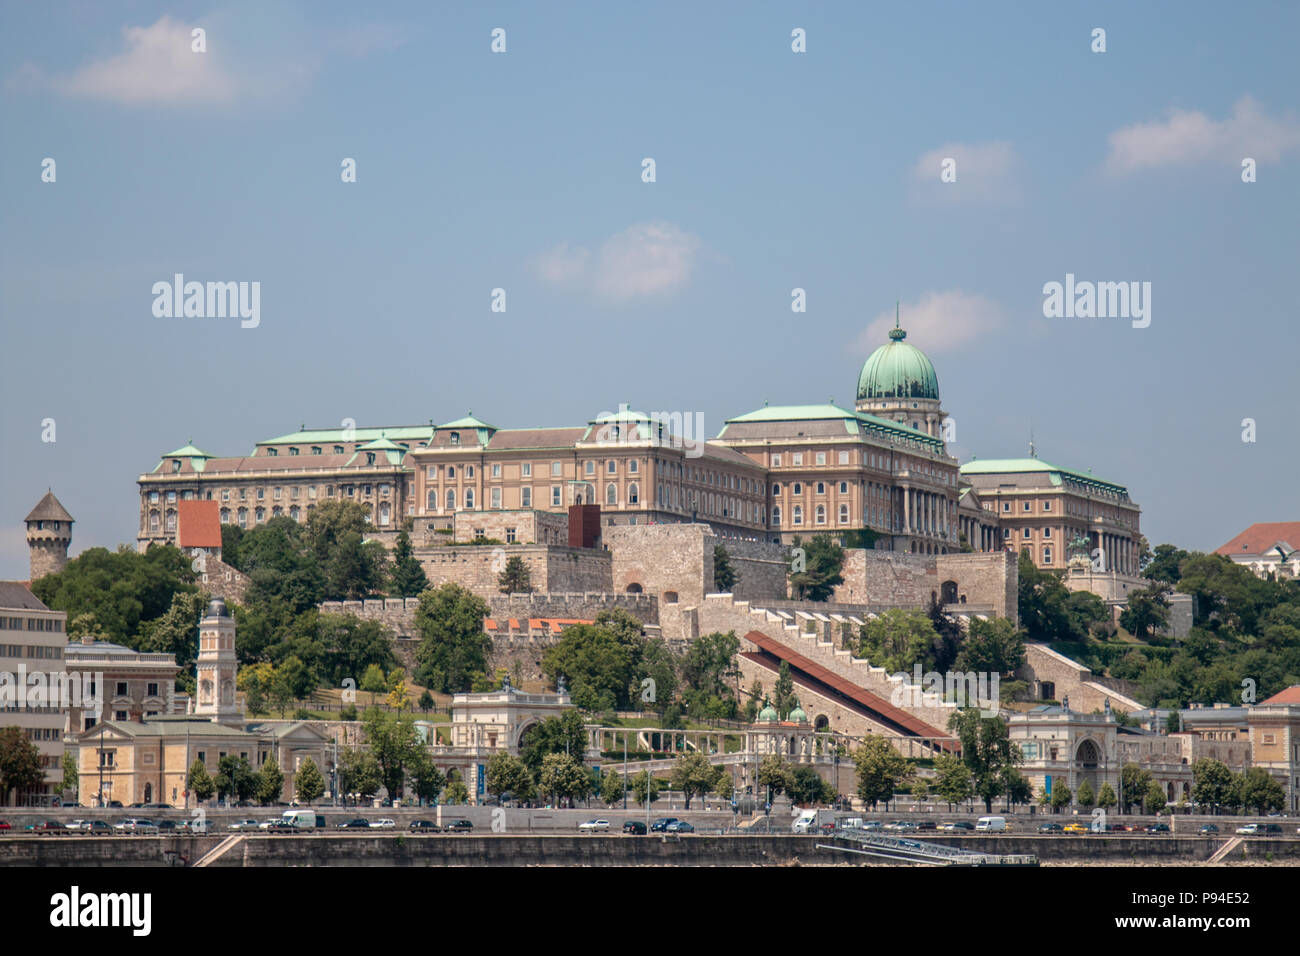 Vue du château de Buda de Pest, sur la rive gauche du Danube à Budapest Banque D'Images